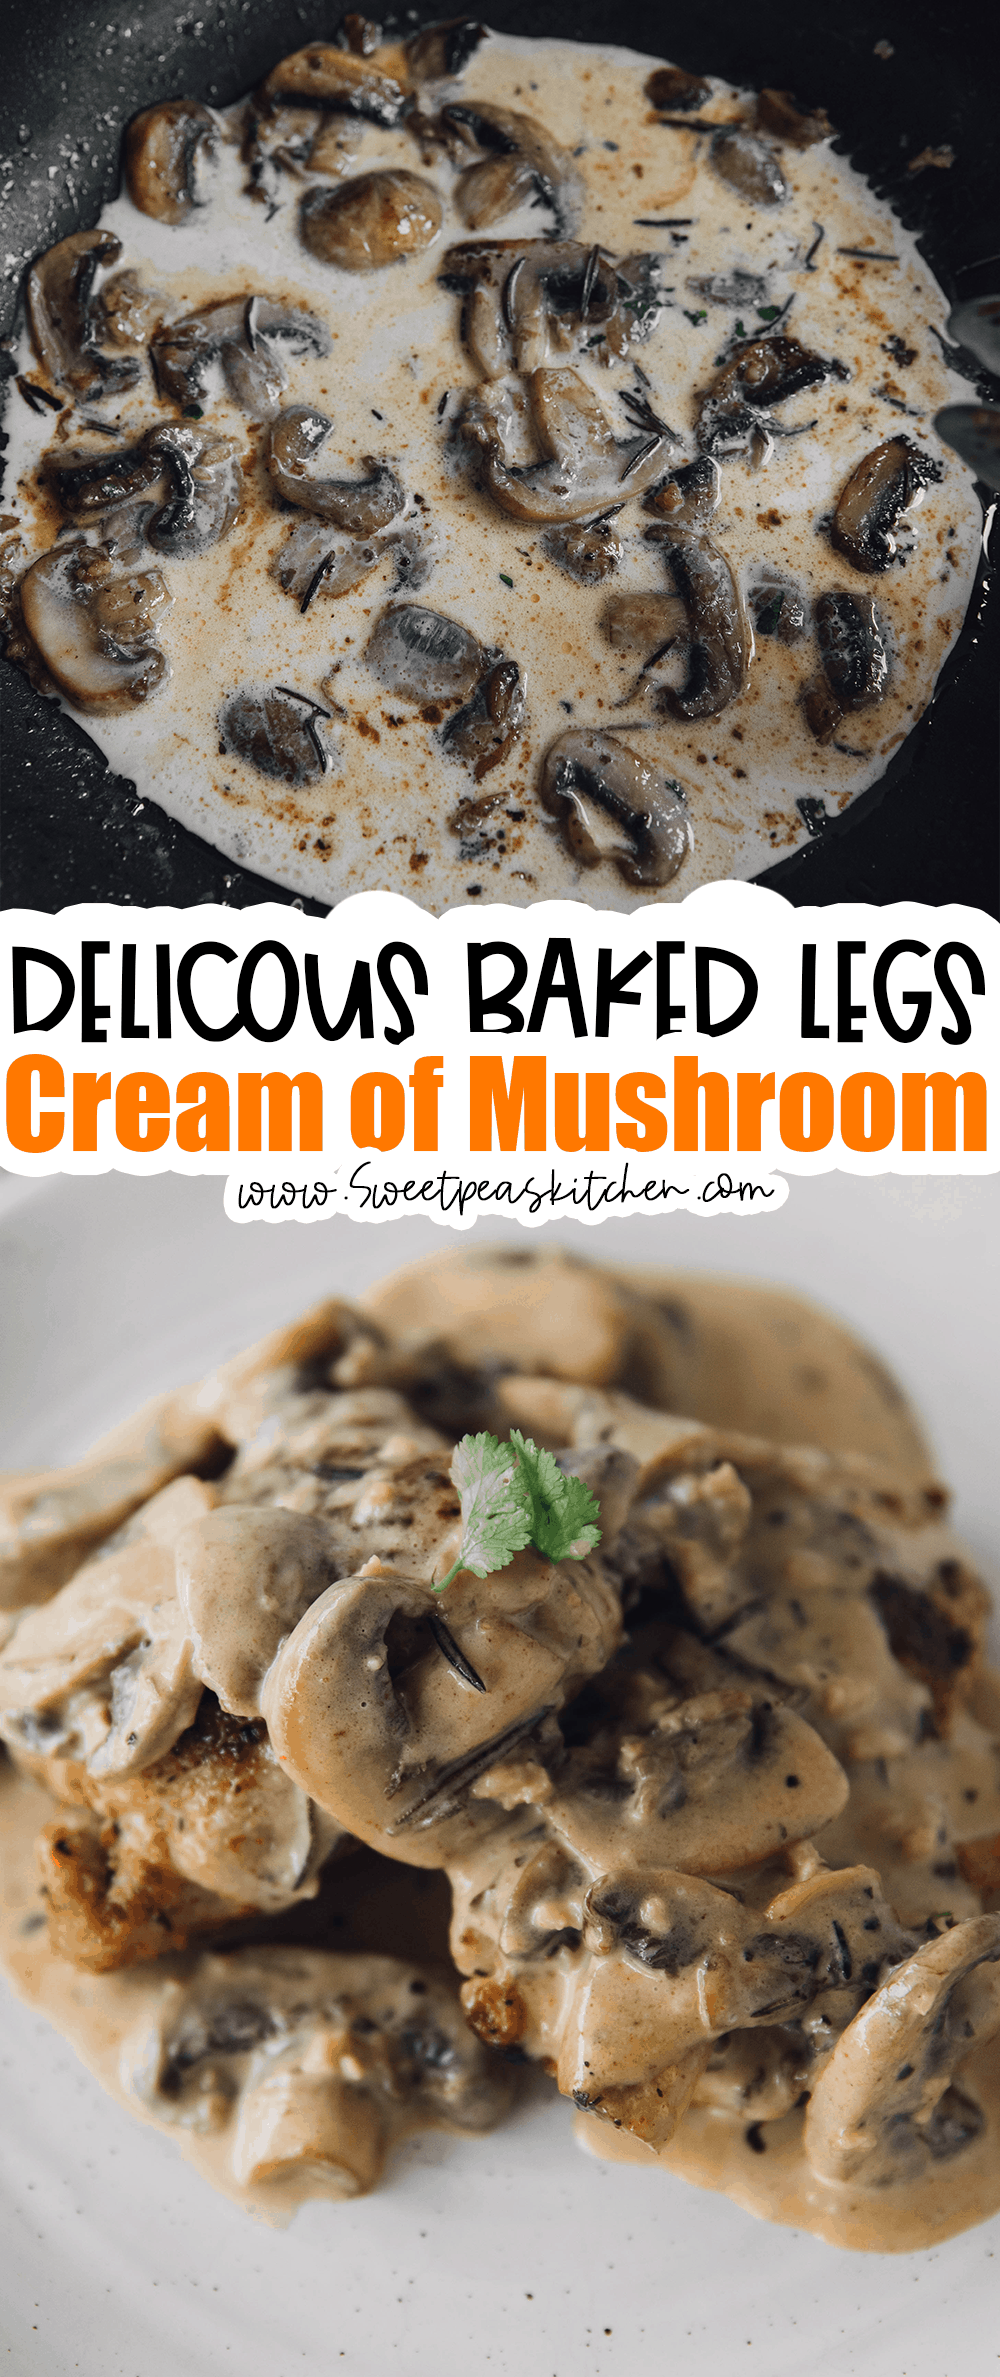 Baked Legs with Cream of Mushroom on Pinterest